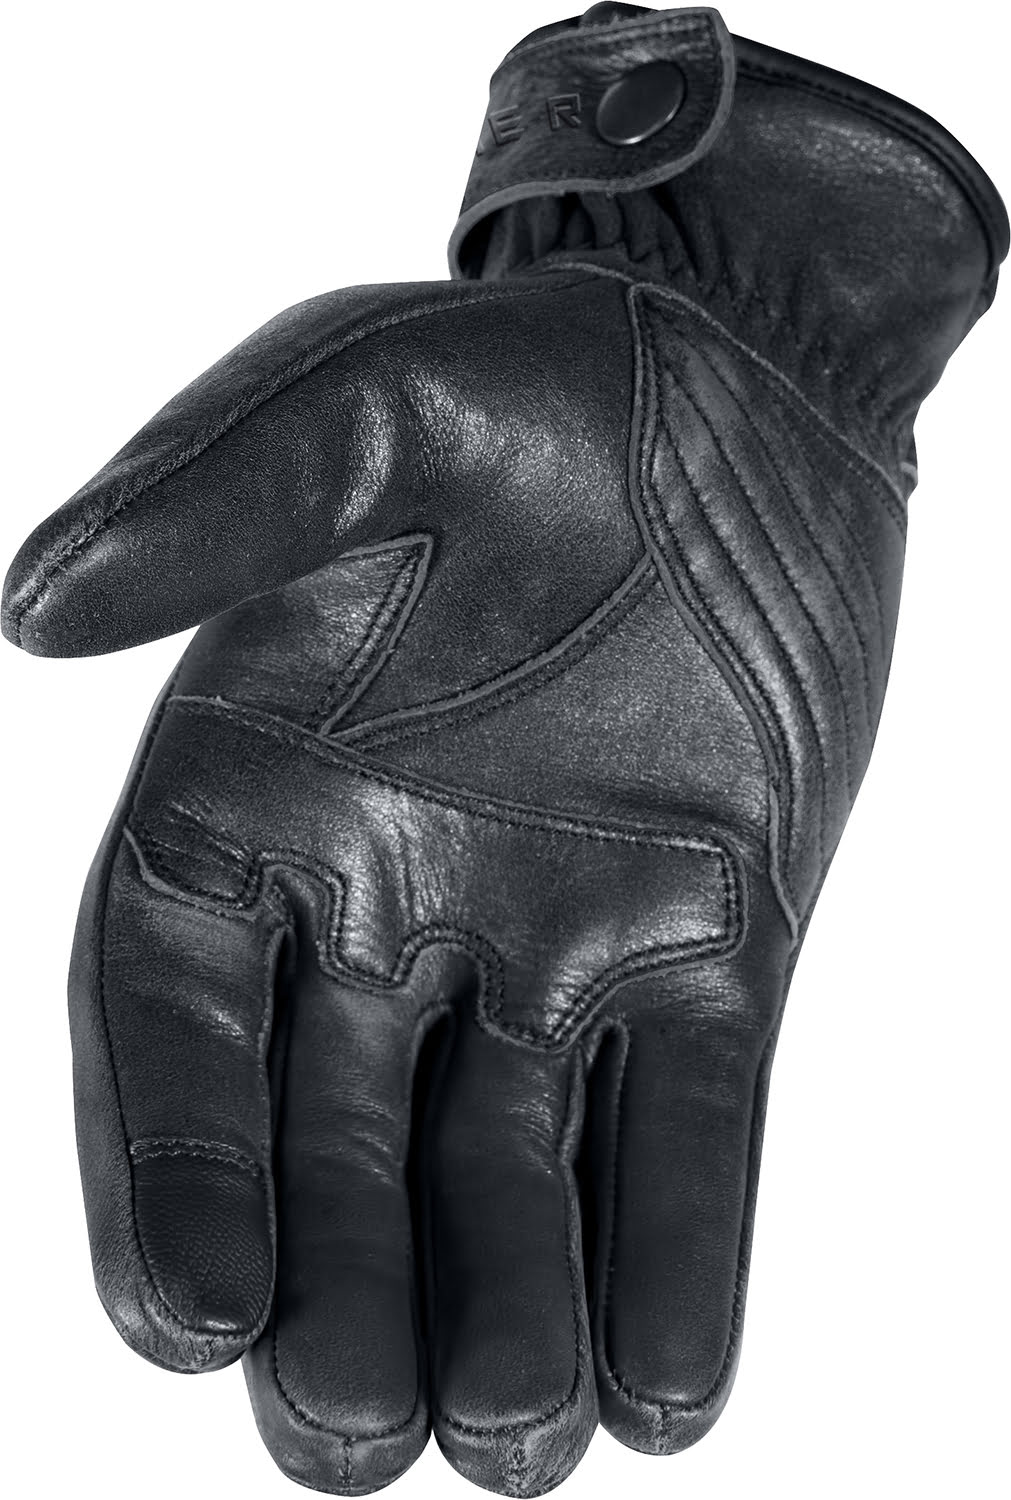 Gloves VINTAGE 2.0 Black STORMER 